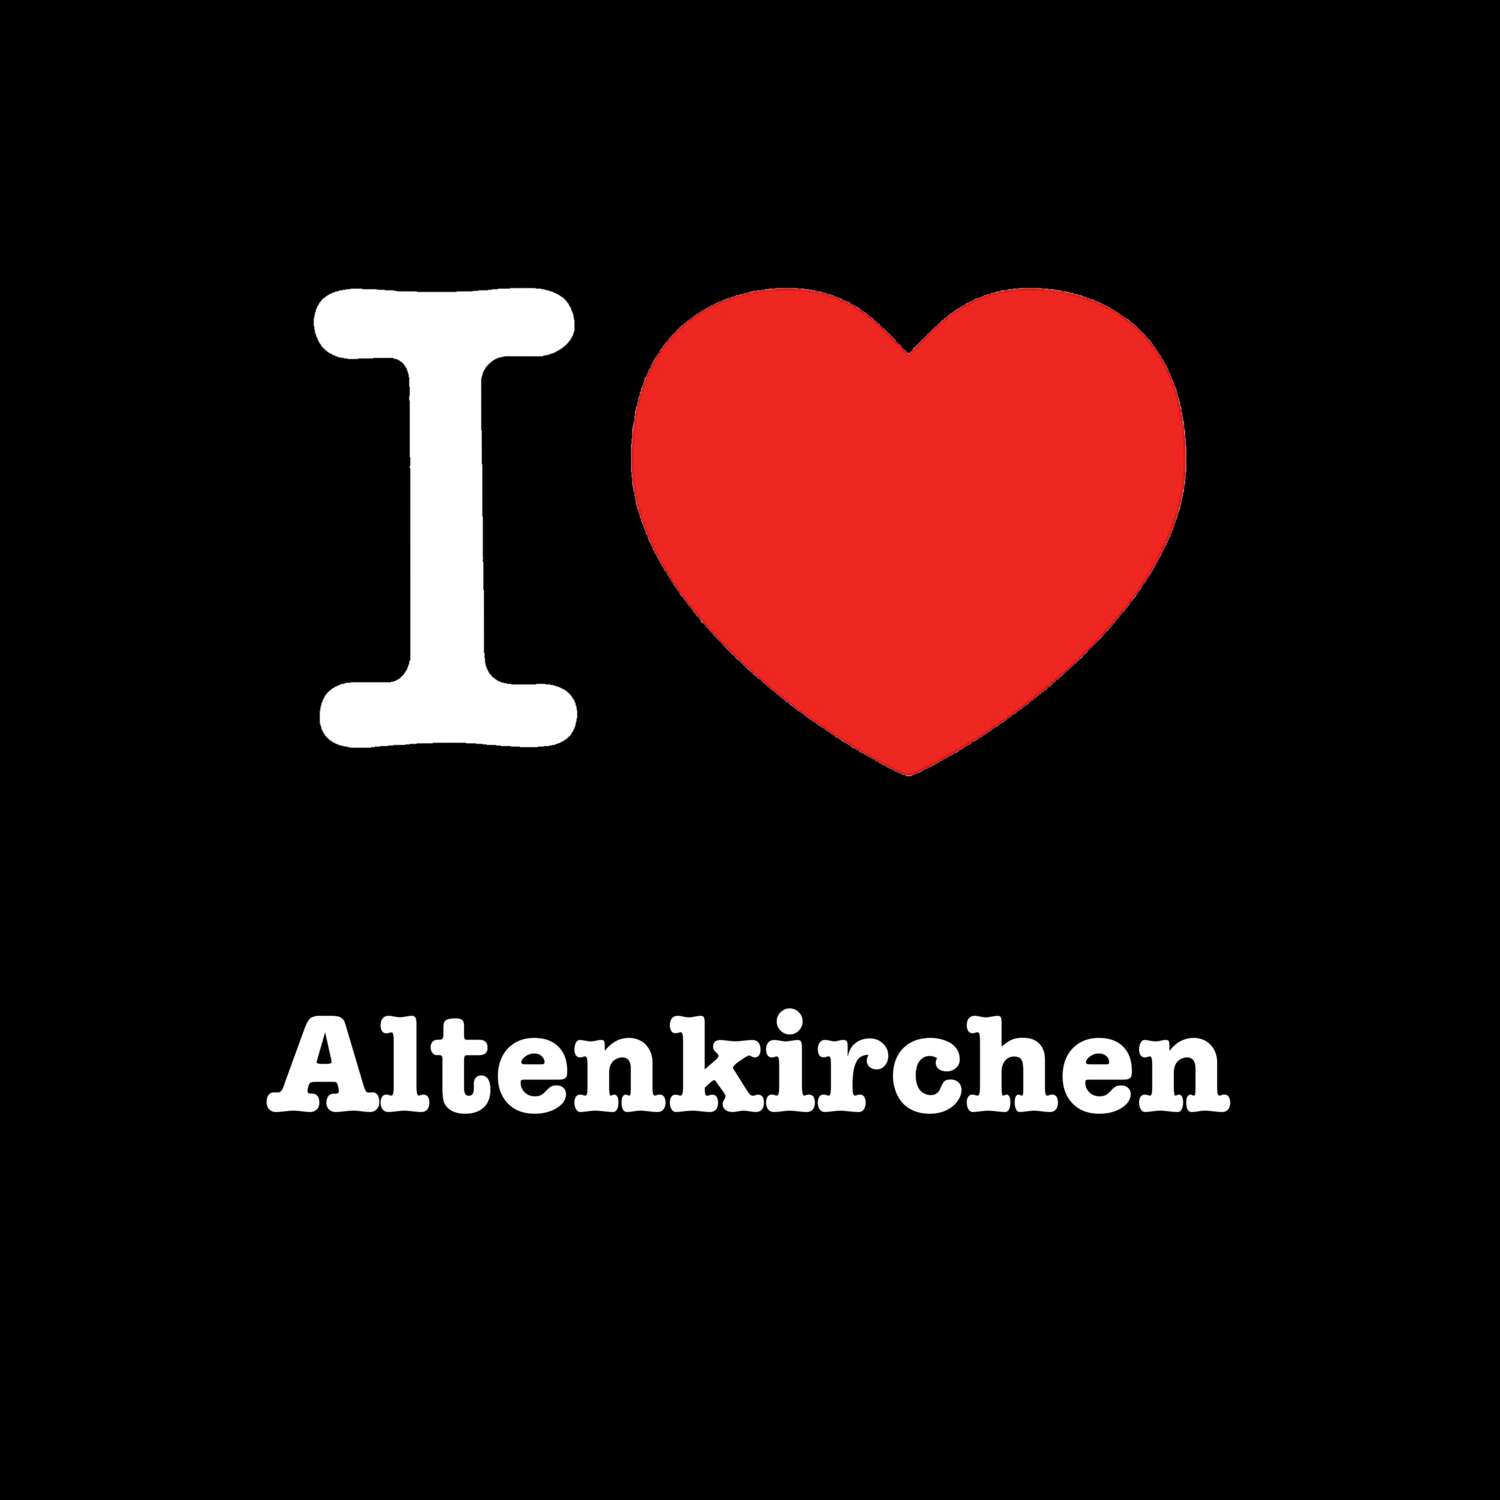 Altenkirchen T-Shirt »I love«